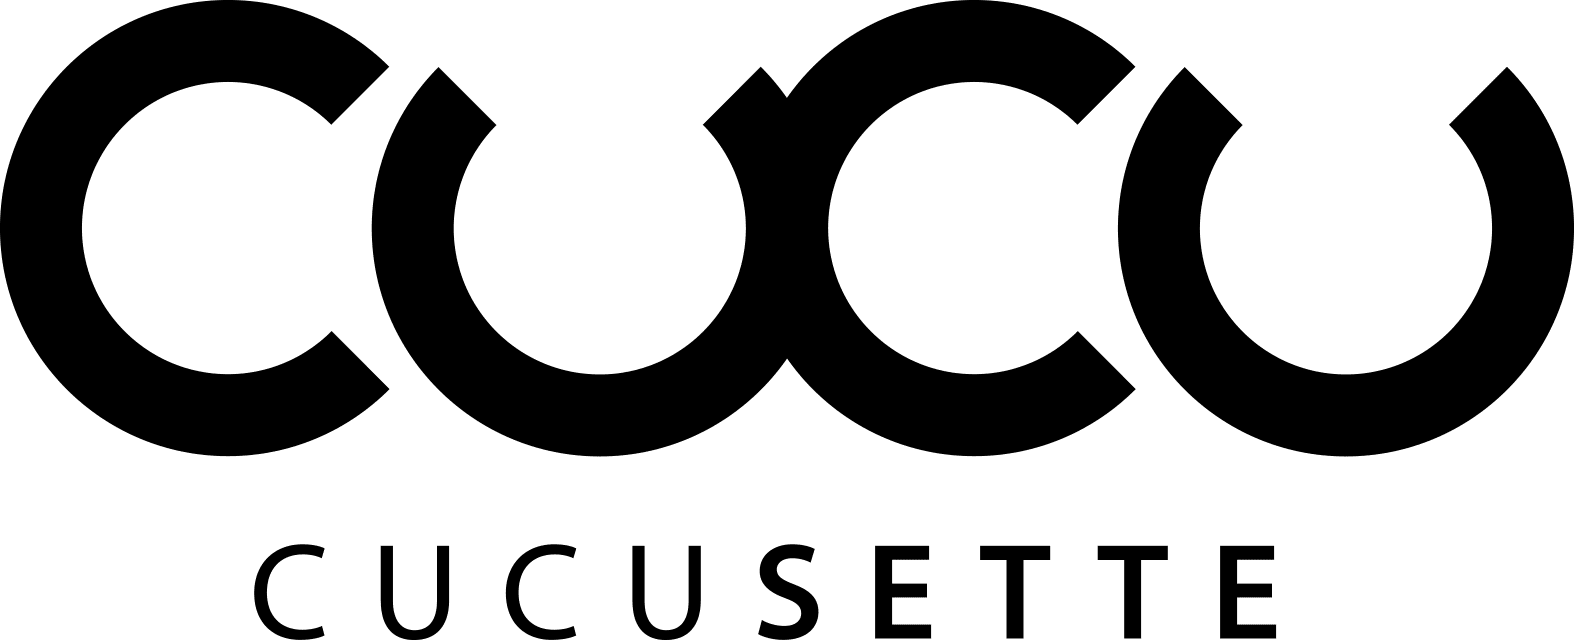 cucusette